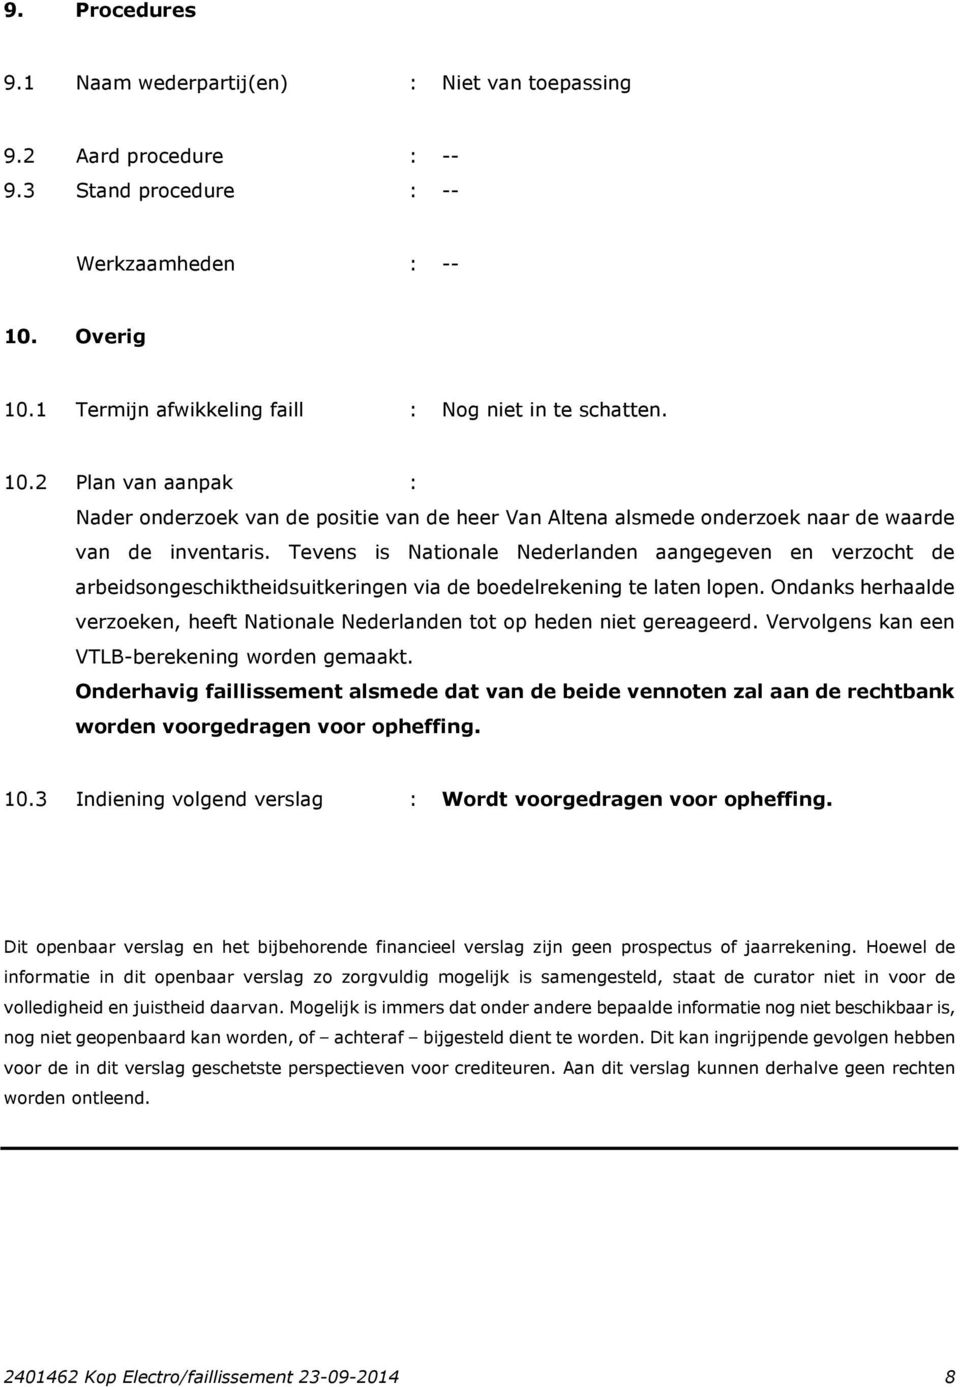 Tevens is Nationale Nederlanden aangegeven en verzocht de arbeidsongeschiktheidsuitkeringen via de boedelrekening te laten lopen.